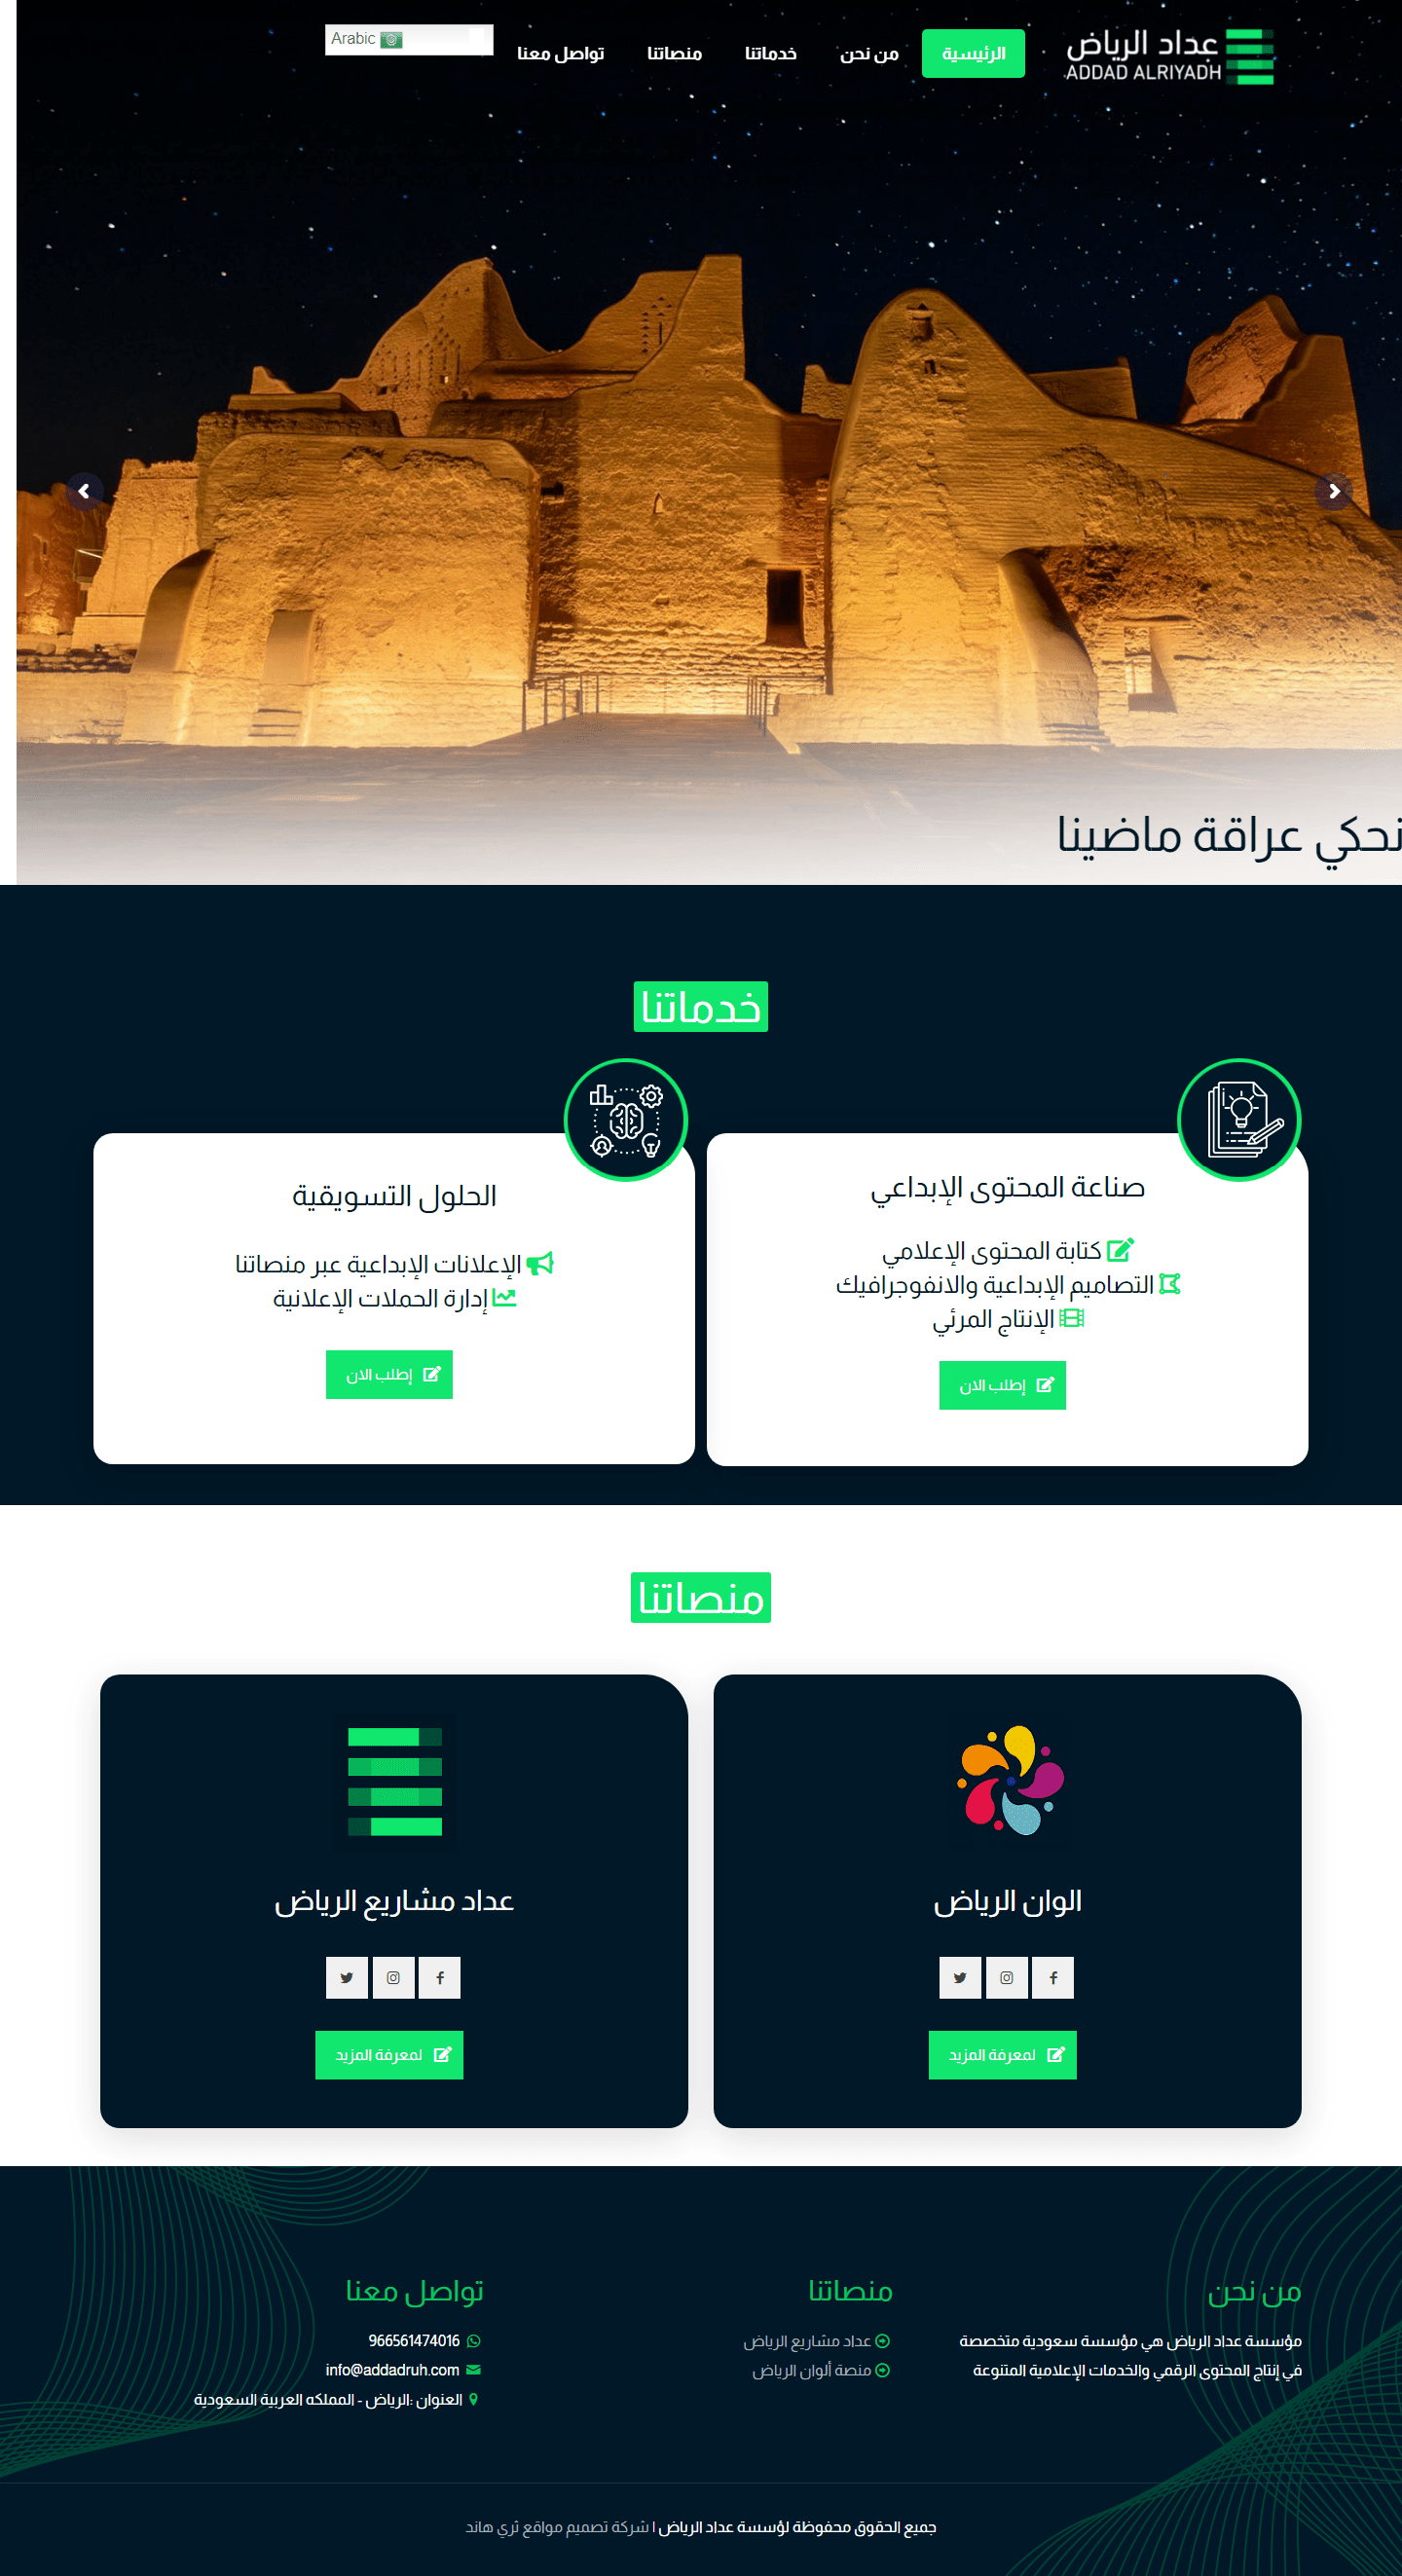 مؤسسة عداد الرياض – متخصصة في إنتاج المحتوى الرقمي (2)